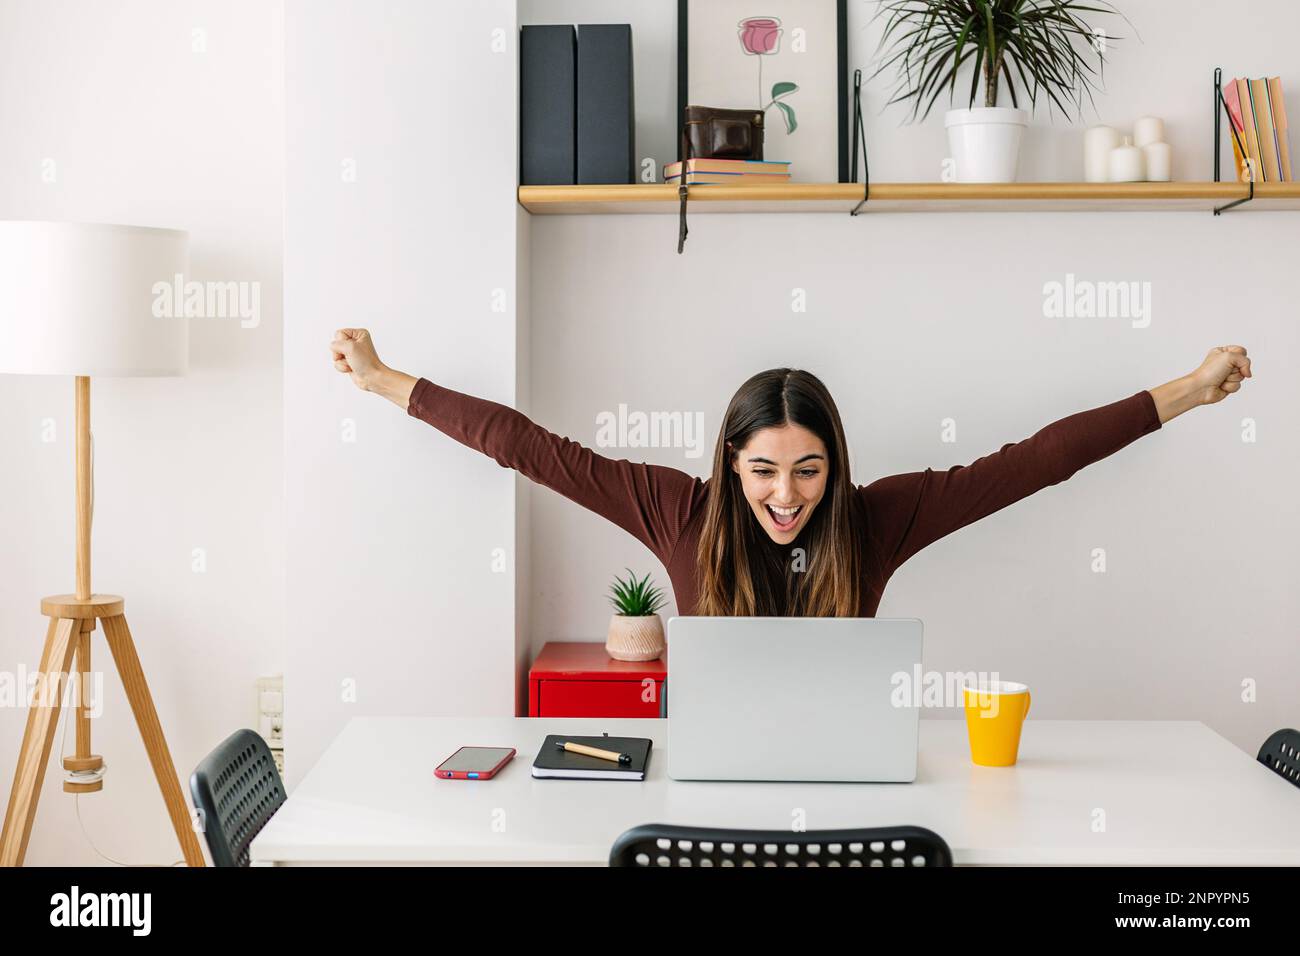 Aufgeregte junge Frau, die gute Nachrichten feiert und zu Hause an einem Laptop arbeitet Stockfoto